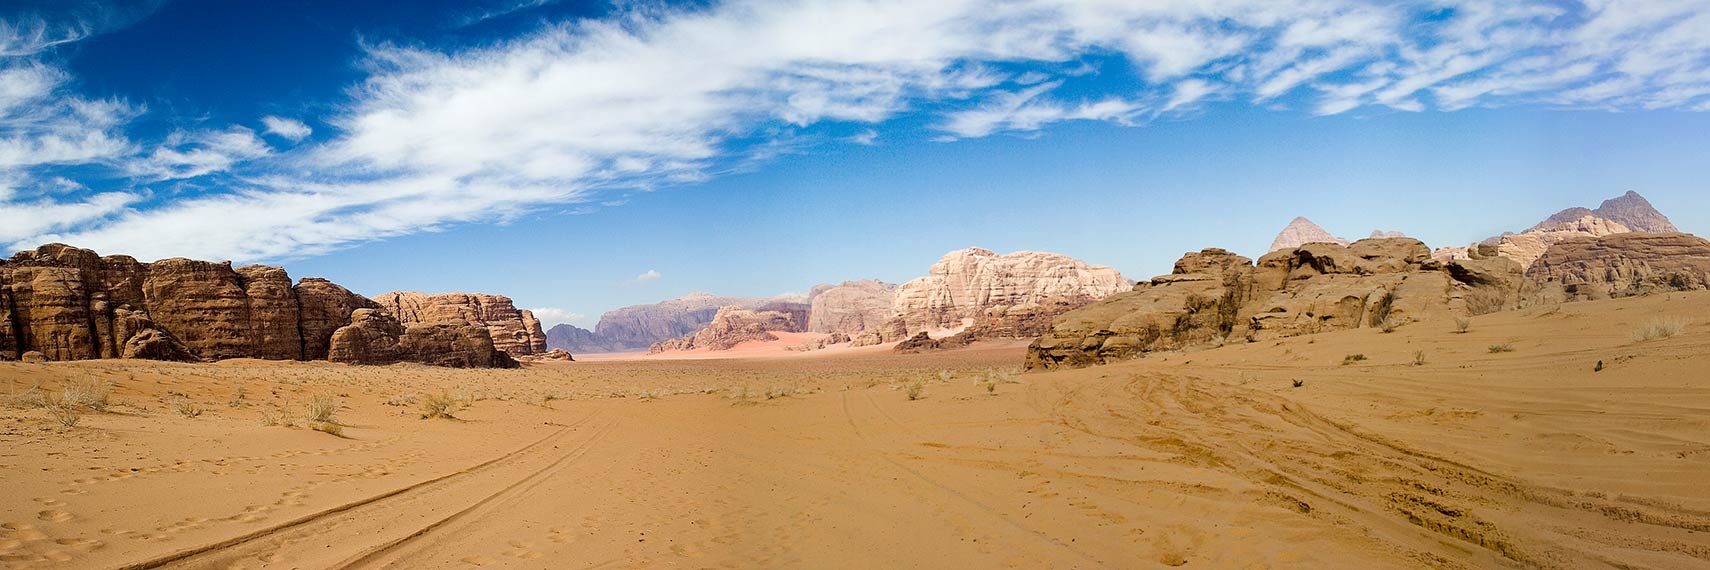 Wadi Rum panorama, Jordan